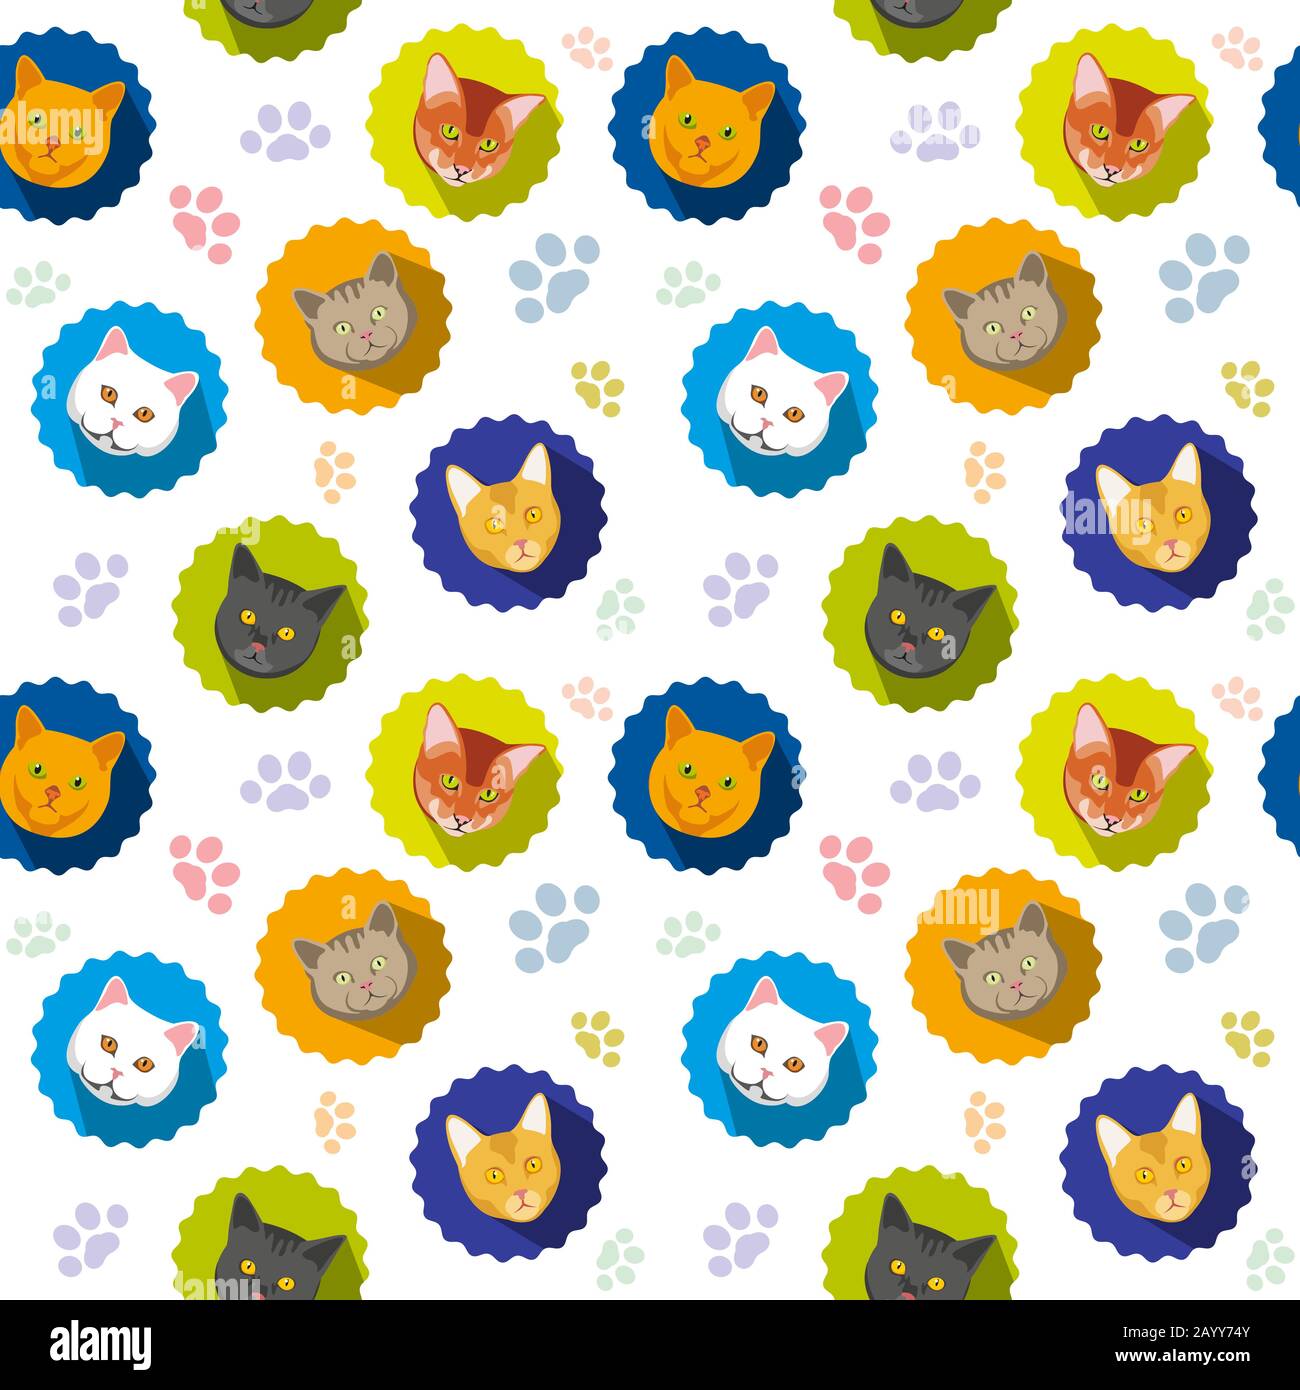 Niedliche Katzen Vektor nahtloses Muster. Tierkatze mit farbigen Pfoten, Hintergrund mit Kopfkatzenabbildung Stock Vektor